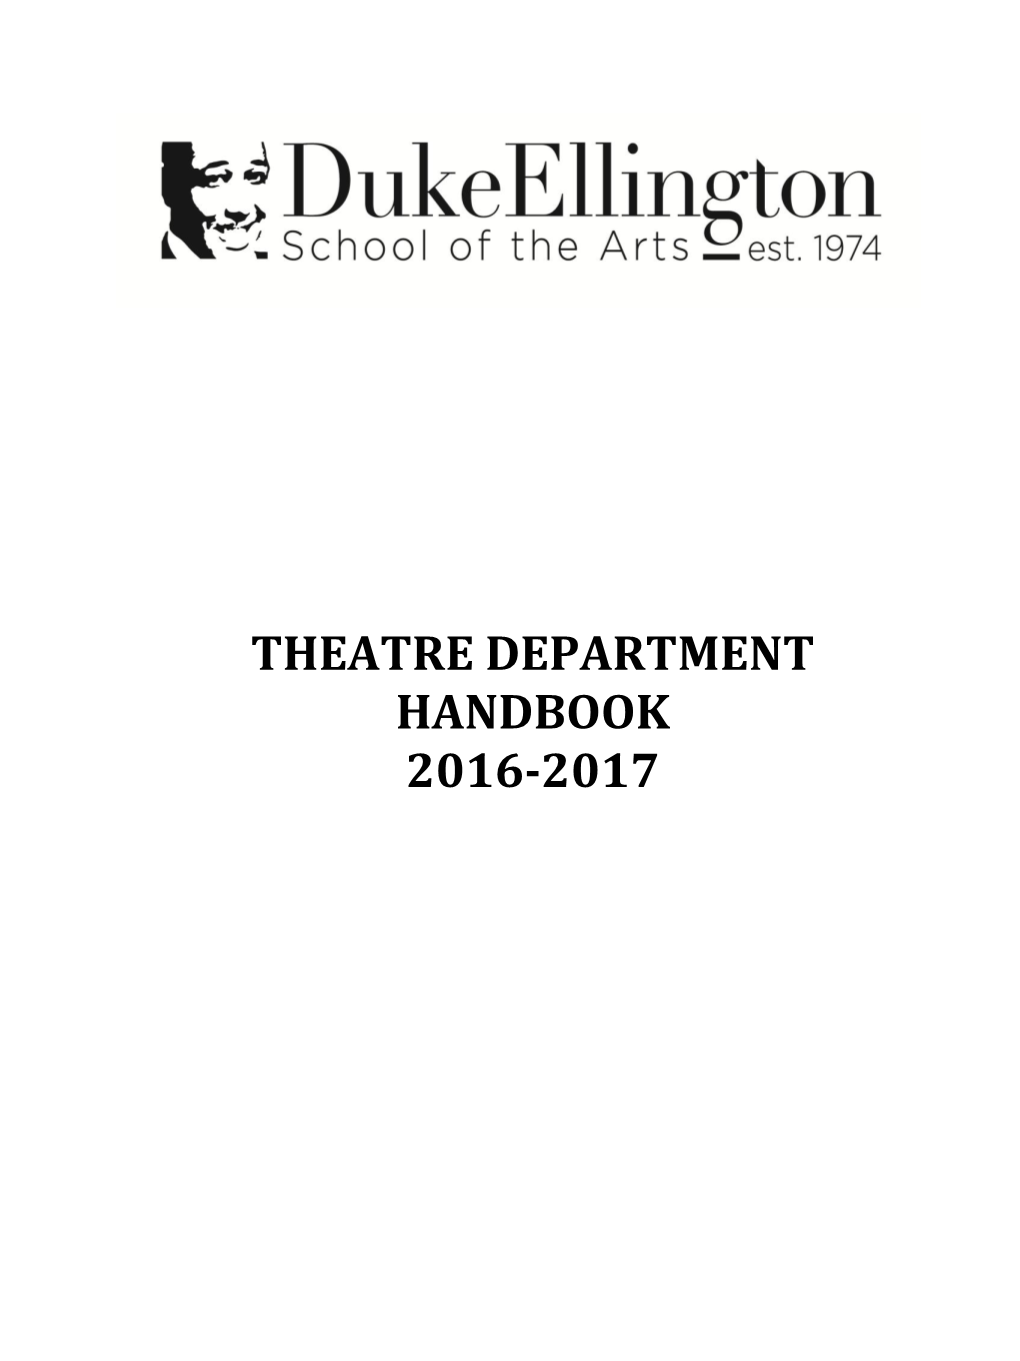 Theatre Department Handbook 2016-2017